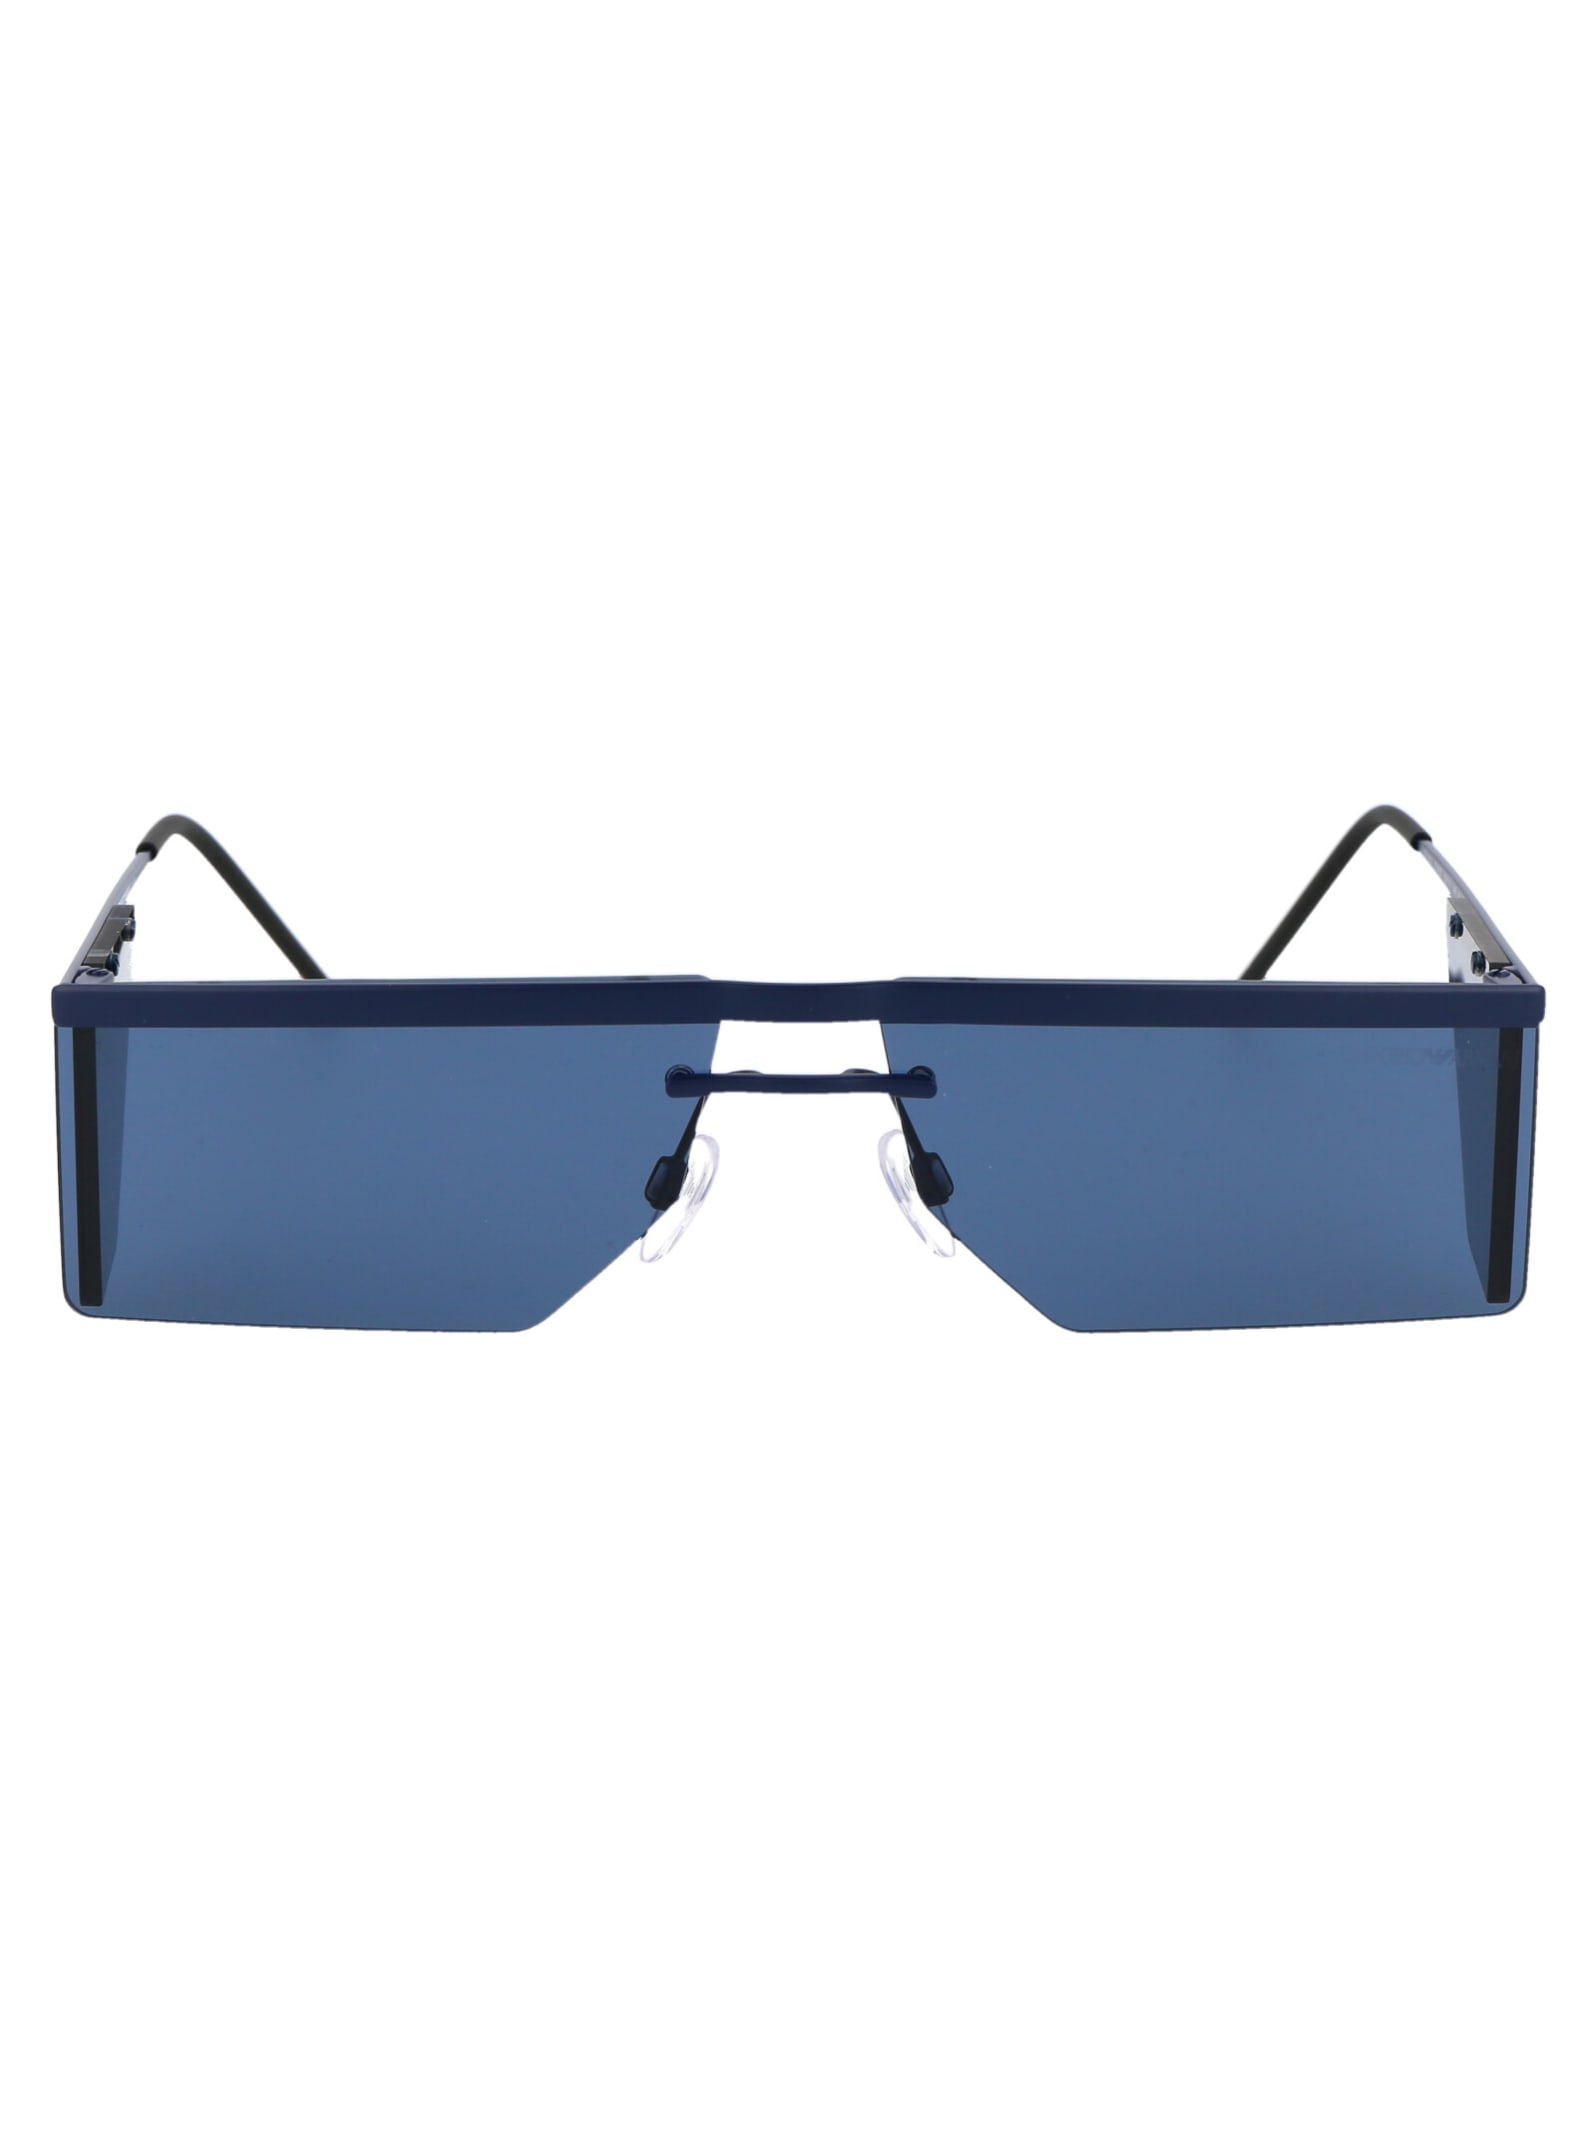 Emporio Armani 0ea2123 Sunglasses